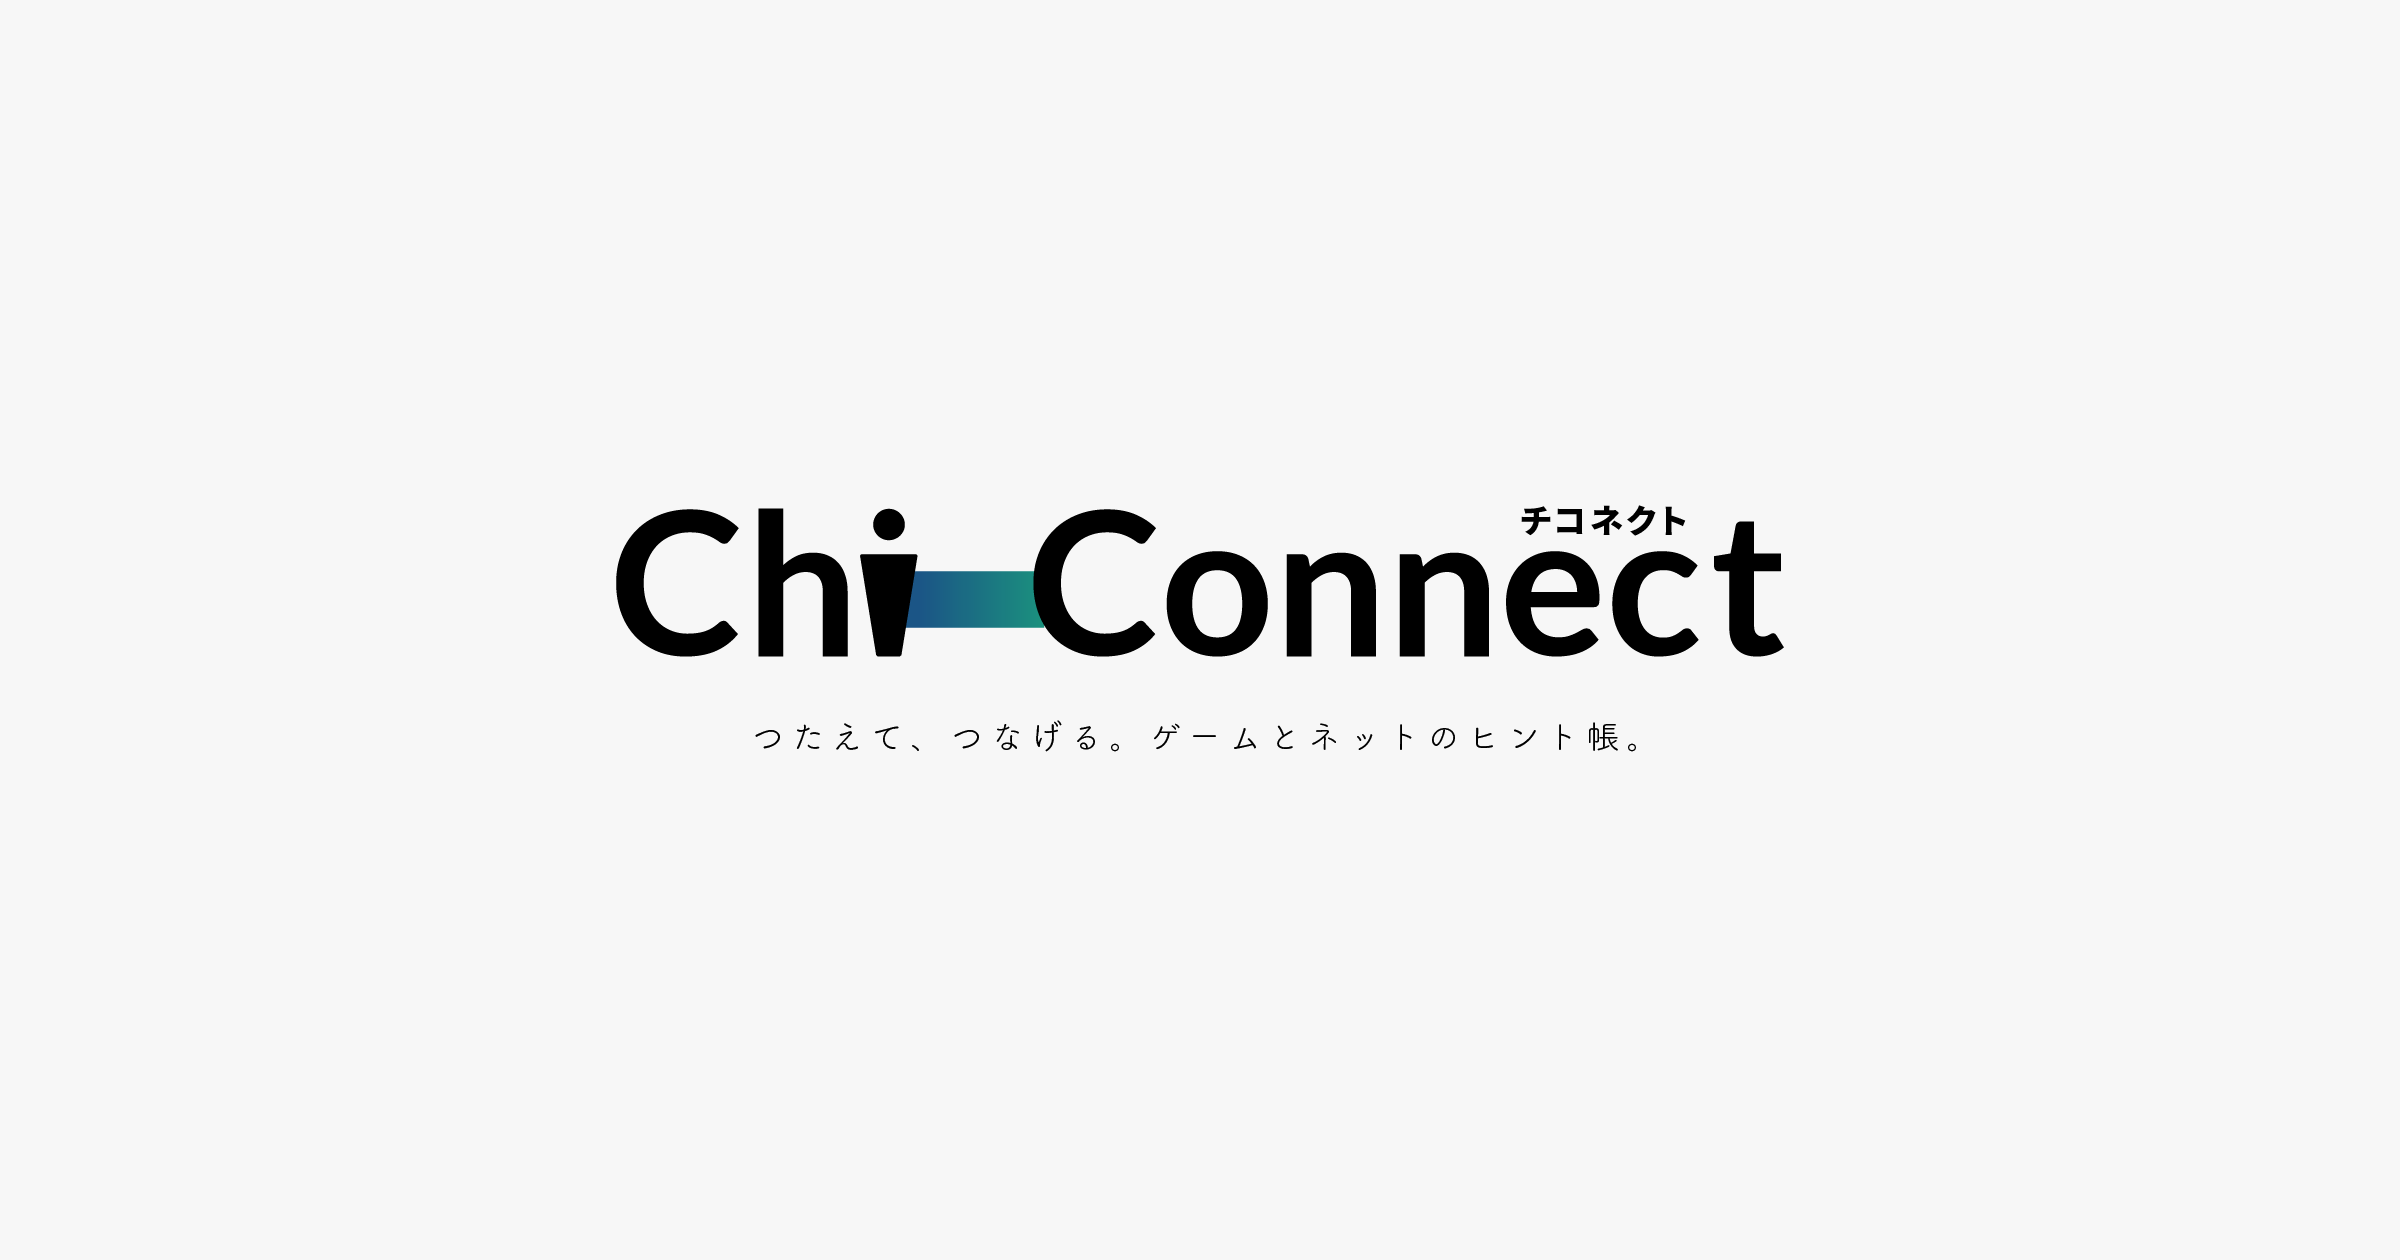 ポケモン サン ムーン 天気呼び出しで出現するポケモンと天気を変更する方法まとめ Chi Connect チコネクト つたえて つなげる ゲームとネットのヒント帳